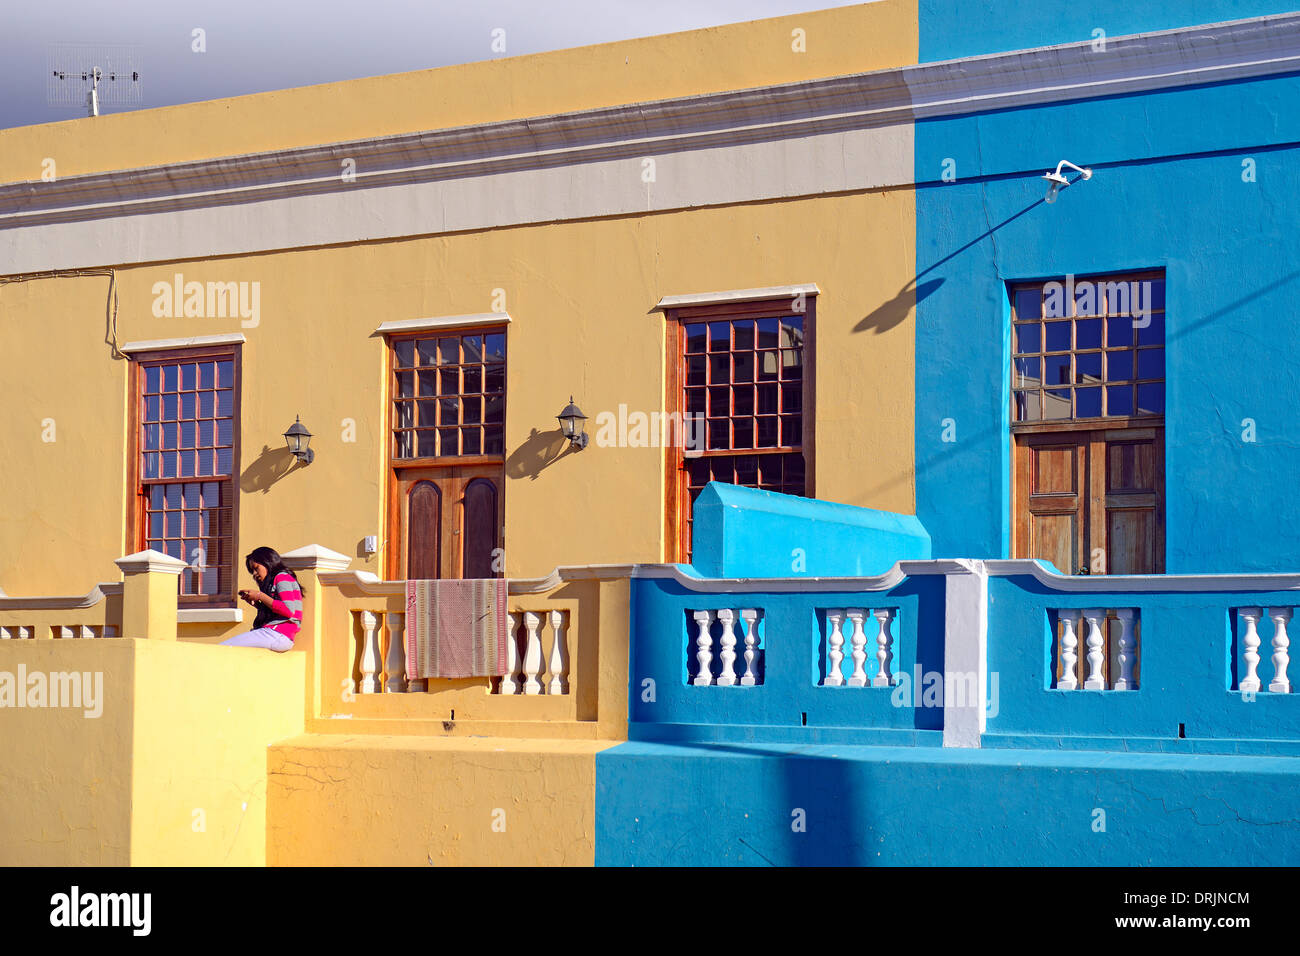 Maisons colorées à Bo Kaap, malaise, moslimisches trimestre, Le Cap, le cap de l'ouest, Western Cape, Afrique du Sud, Afrique, Haeu farbige Banque D'Images